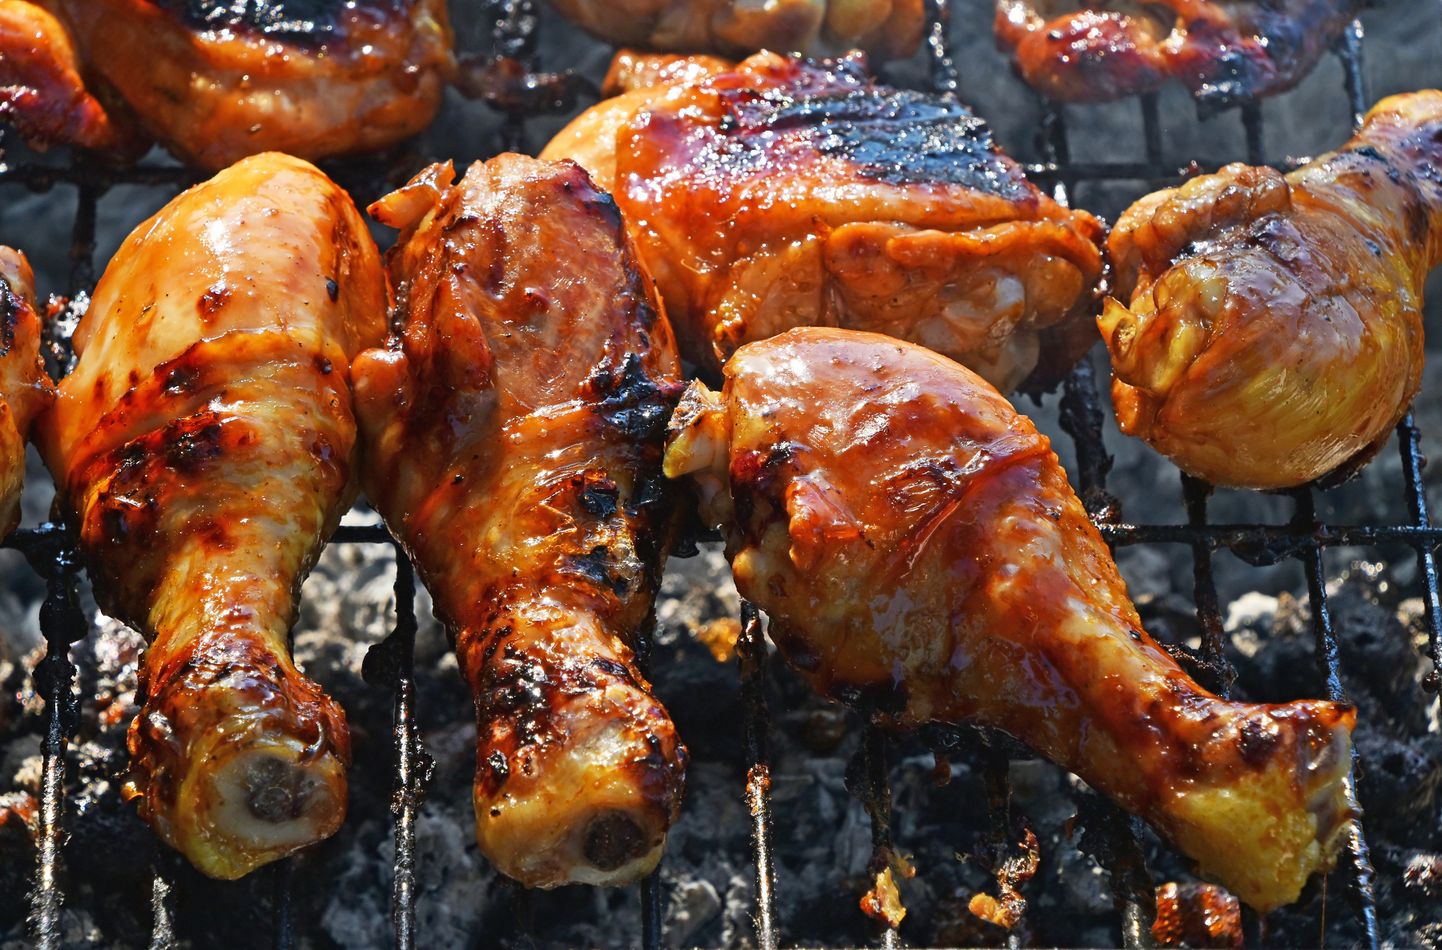 Ainult kana eelistamisest punasele lihale ei pruugi piisata. Oluline on jälgida küllastunud rasvahepete kogust lihas.